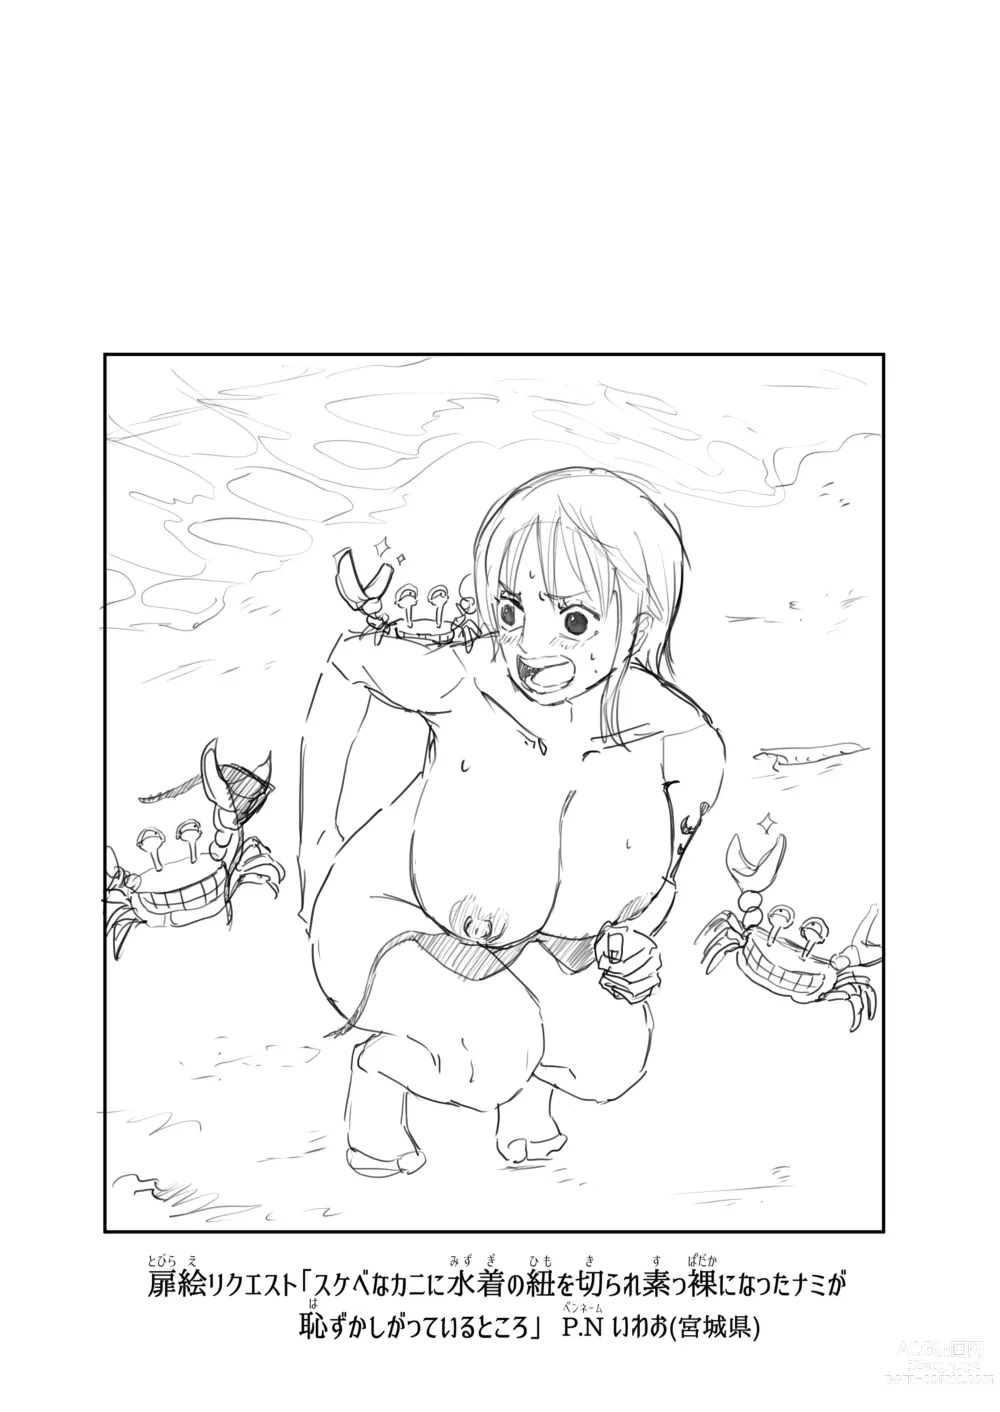 Page 9 of doujinshi Nami Manga + various bonus